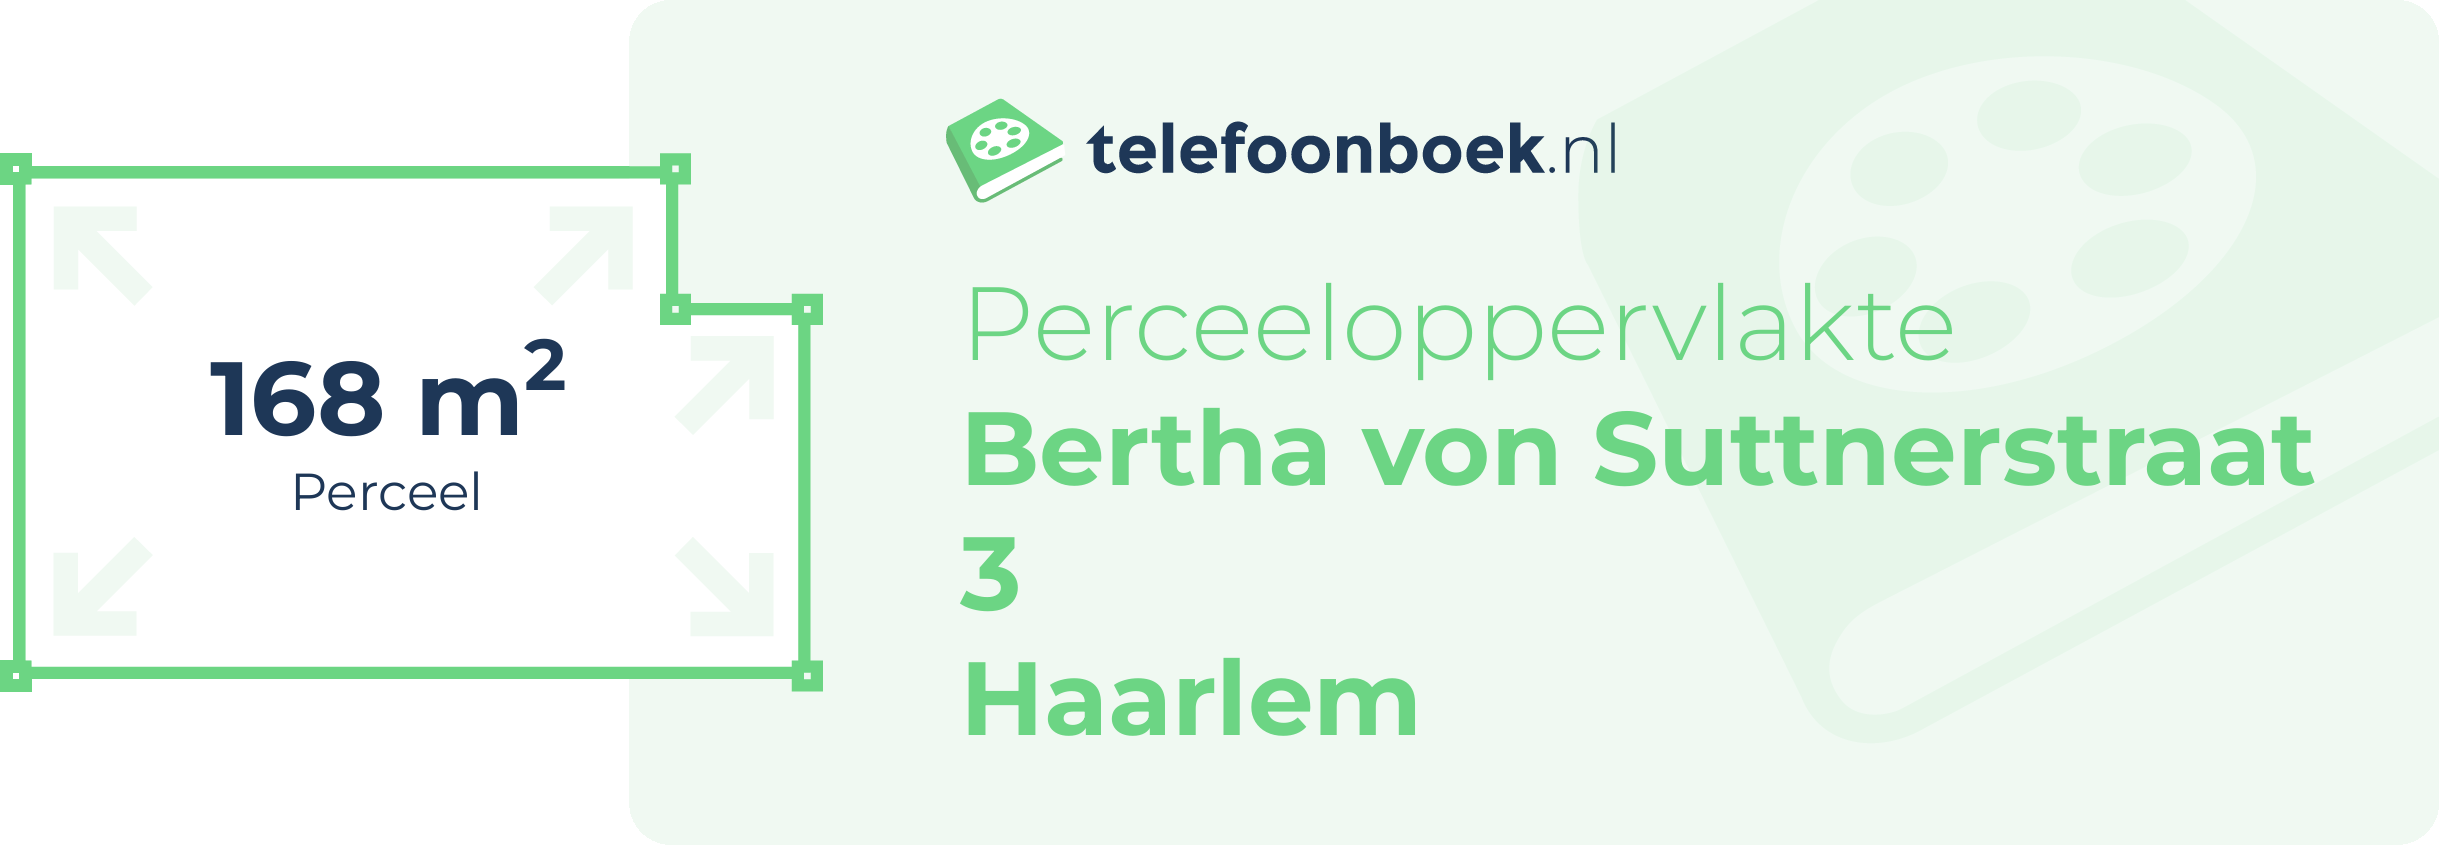 Perceeloppervlakte Bertha Von Suttnerstraat 3 Haarlem